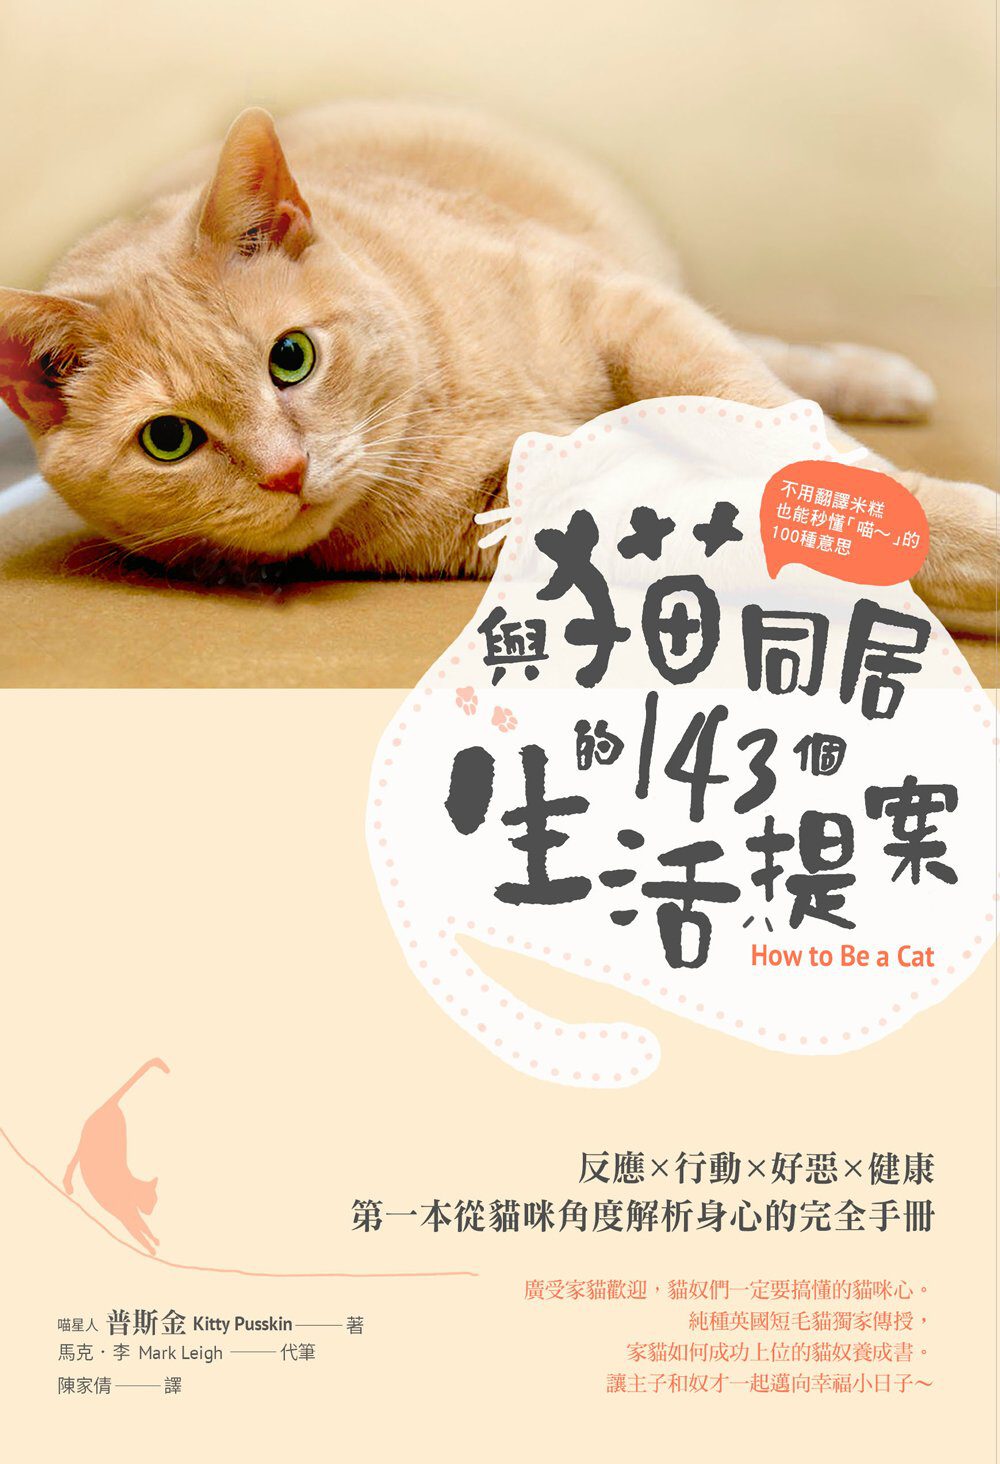 不用翻譯米糕，也能秒懂「喵∼」的100種意思與貓同居的143個生活提案：反應•行動•好惡•健康，第一本從貓咪角度解析喵喵身心的完全手冊